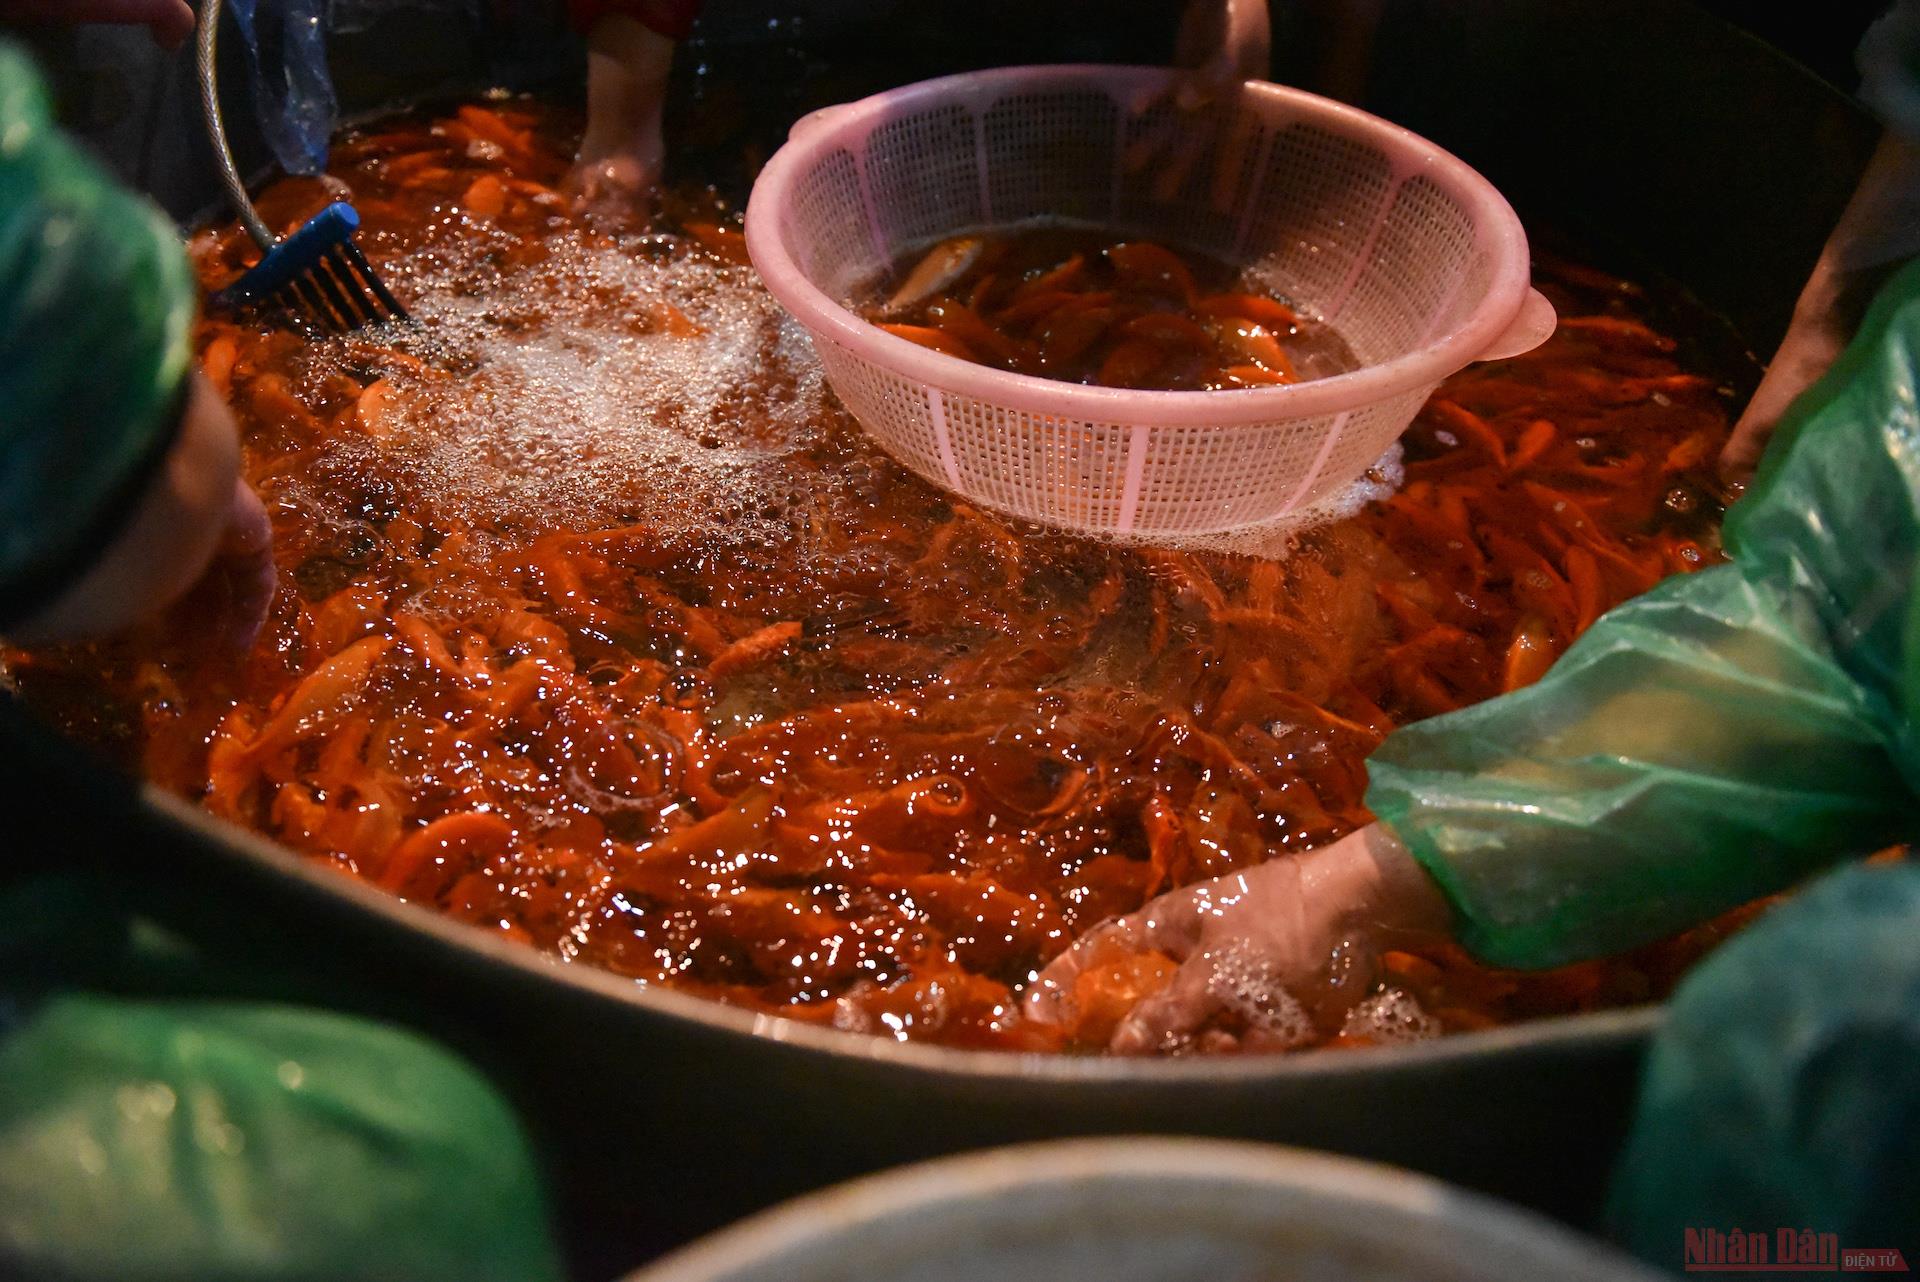 Yen So fish market bustling for Kitchen Gods ceremony